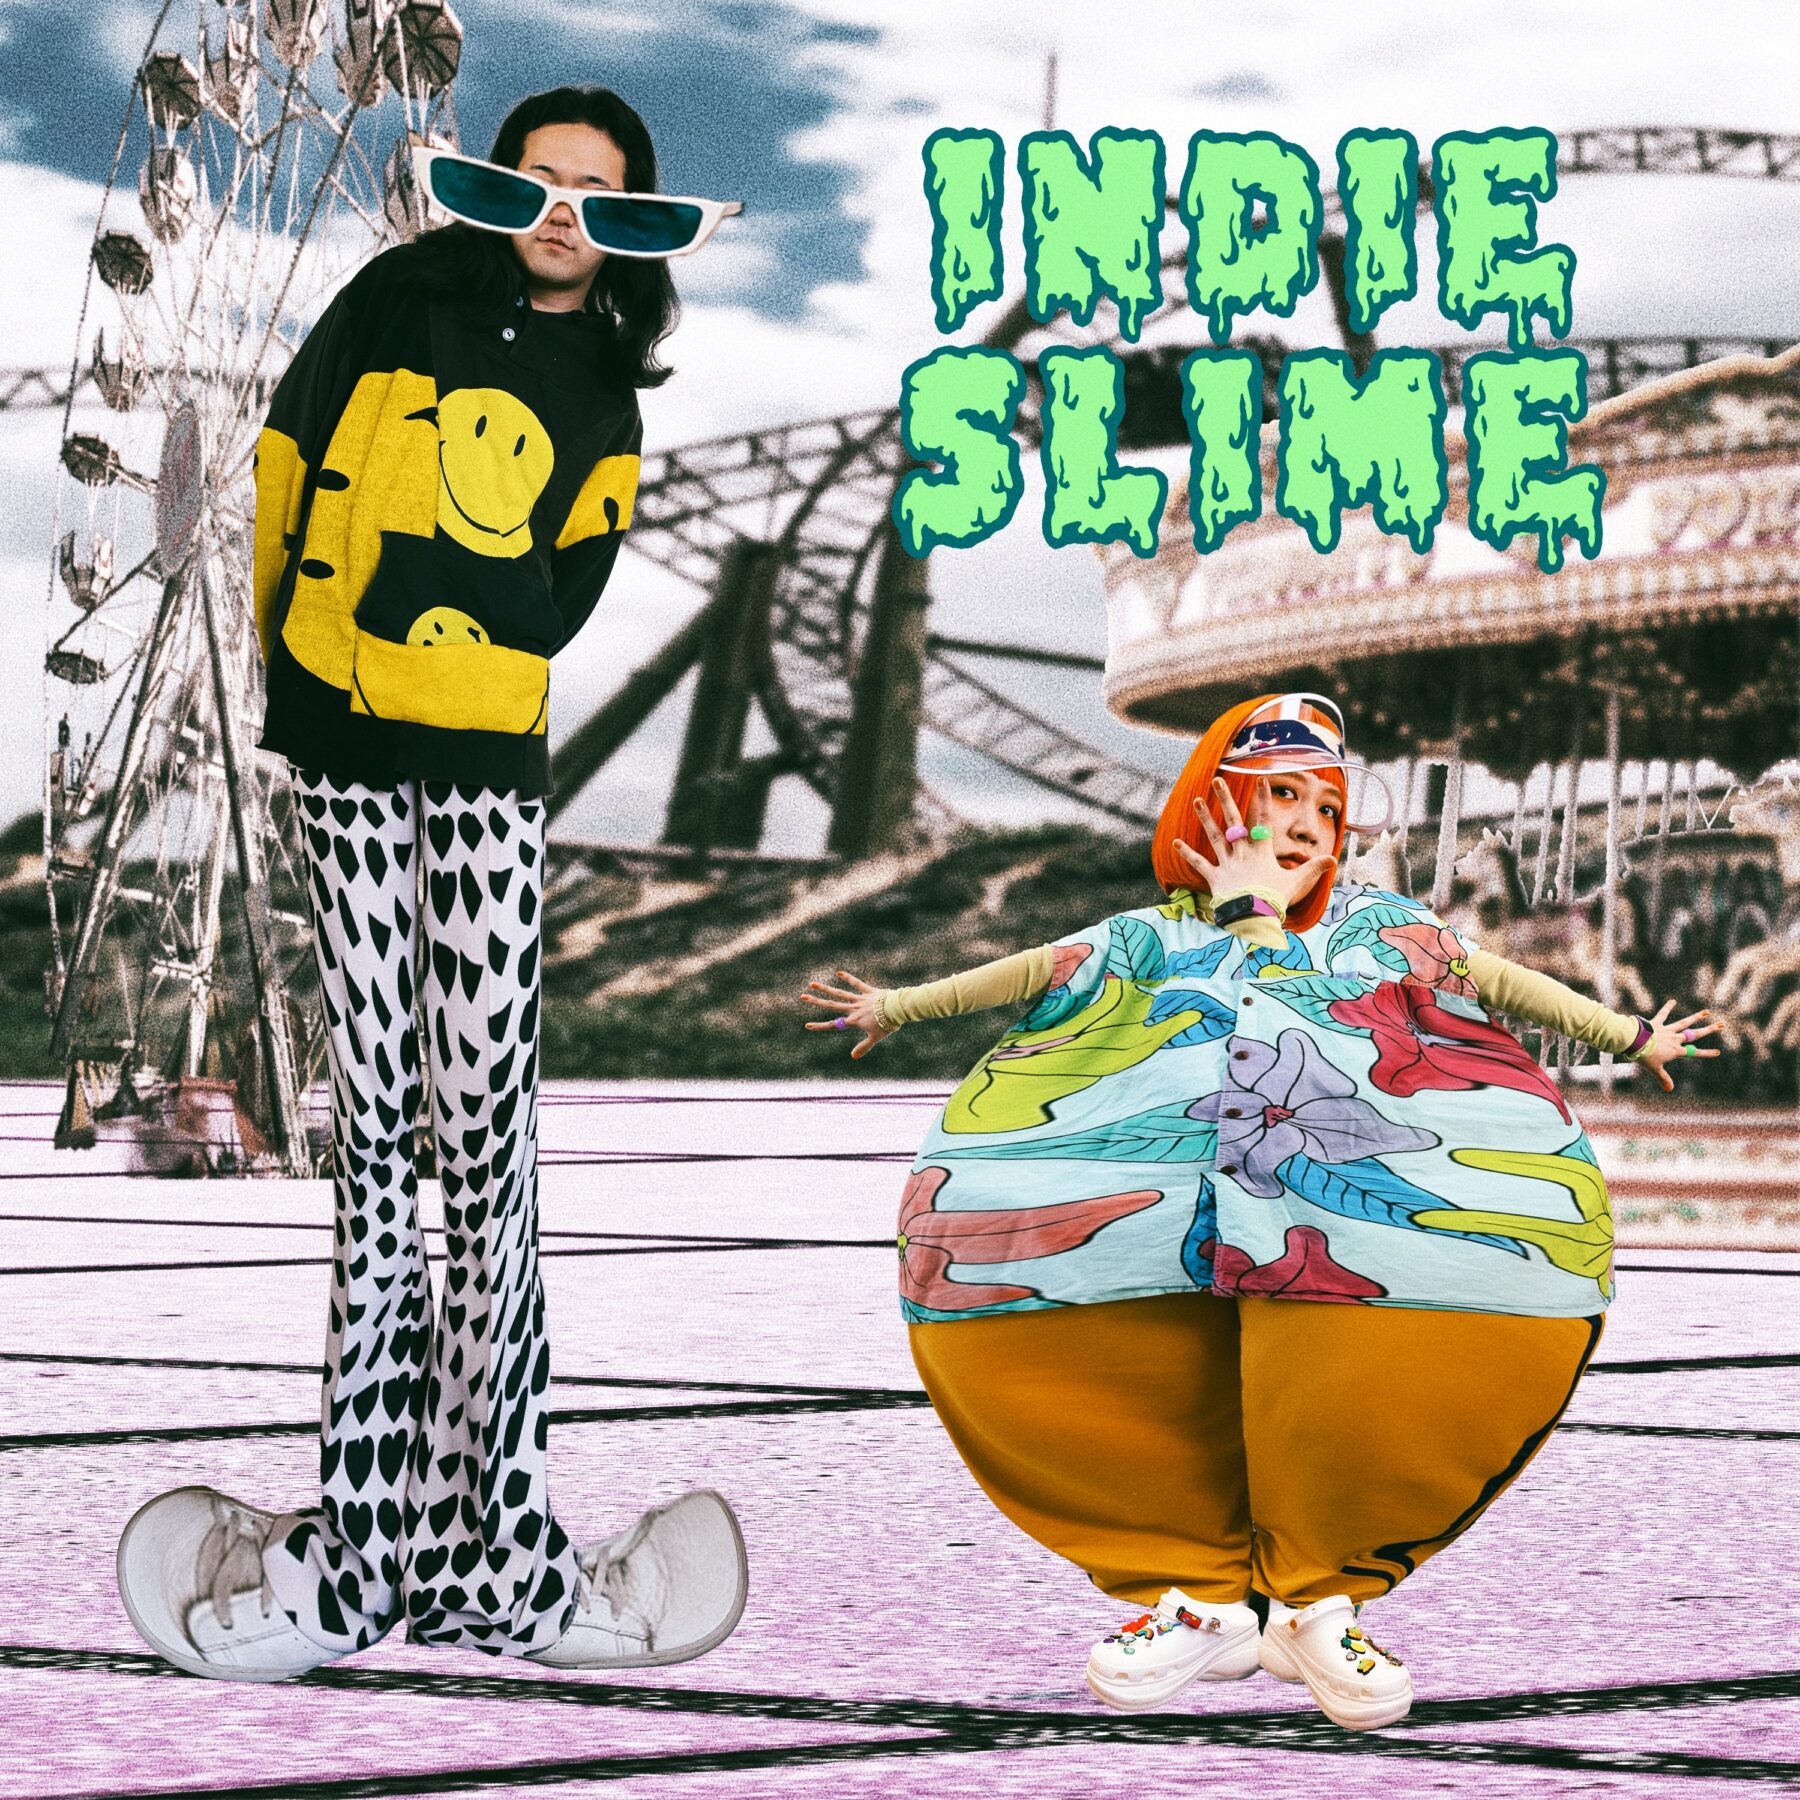 『Indie Slime』ジャケット